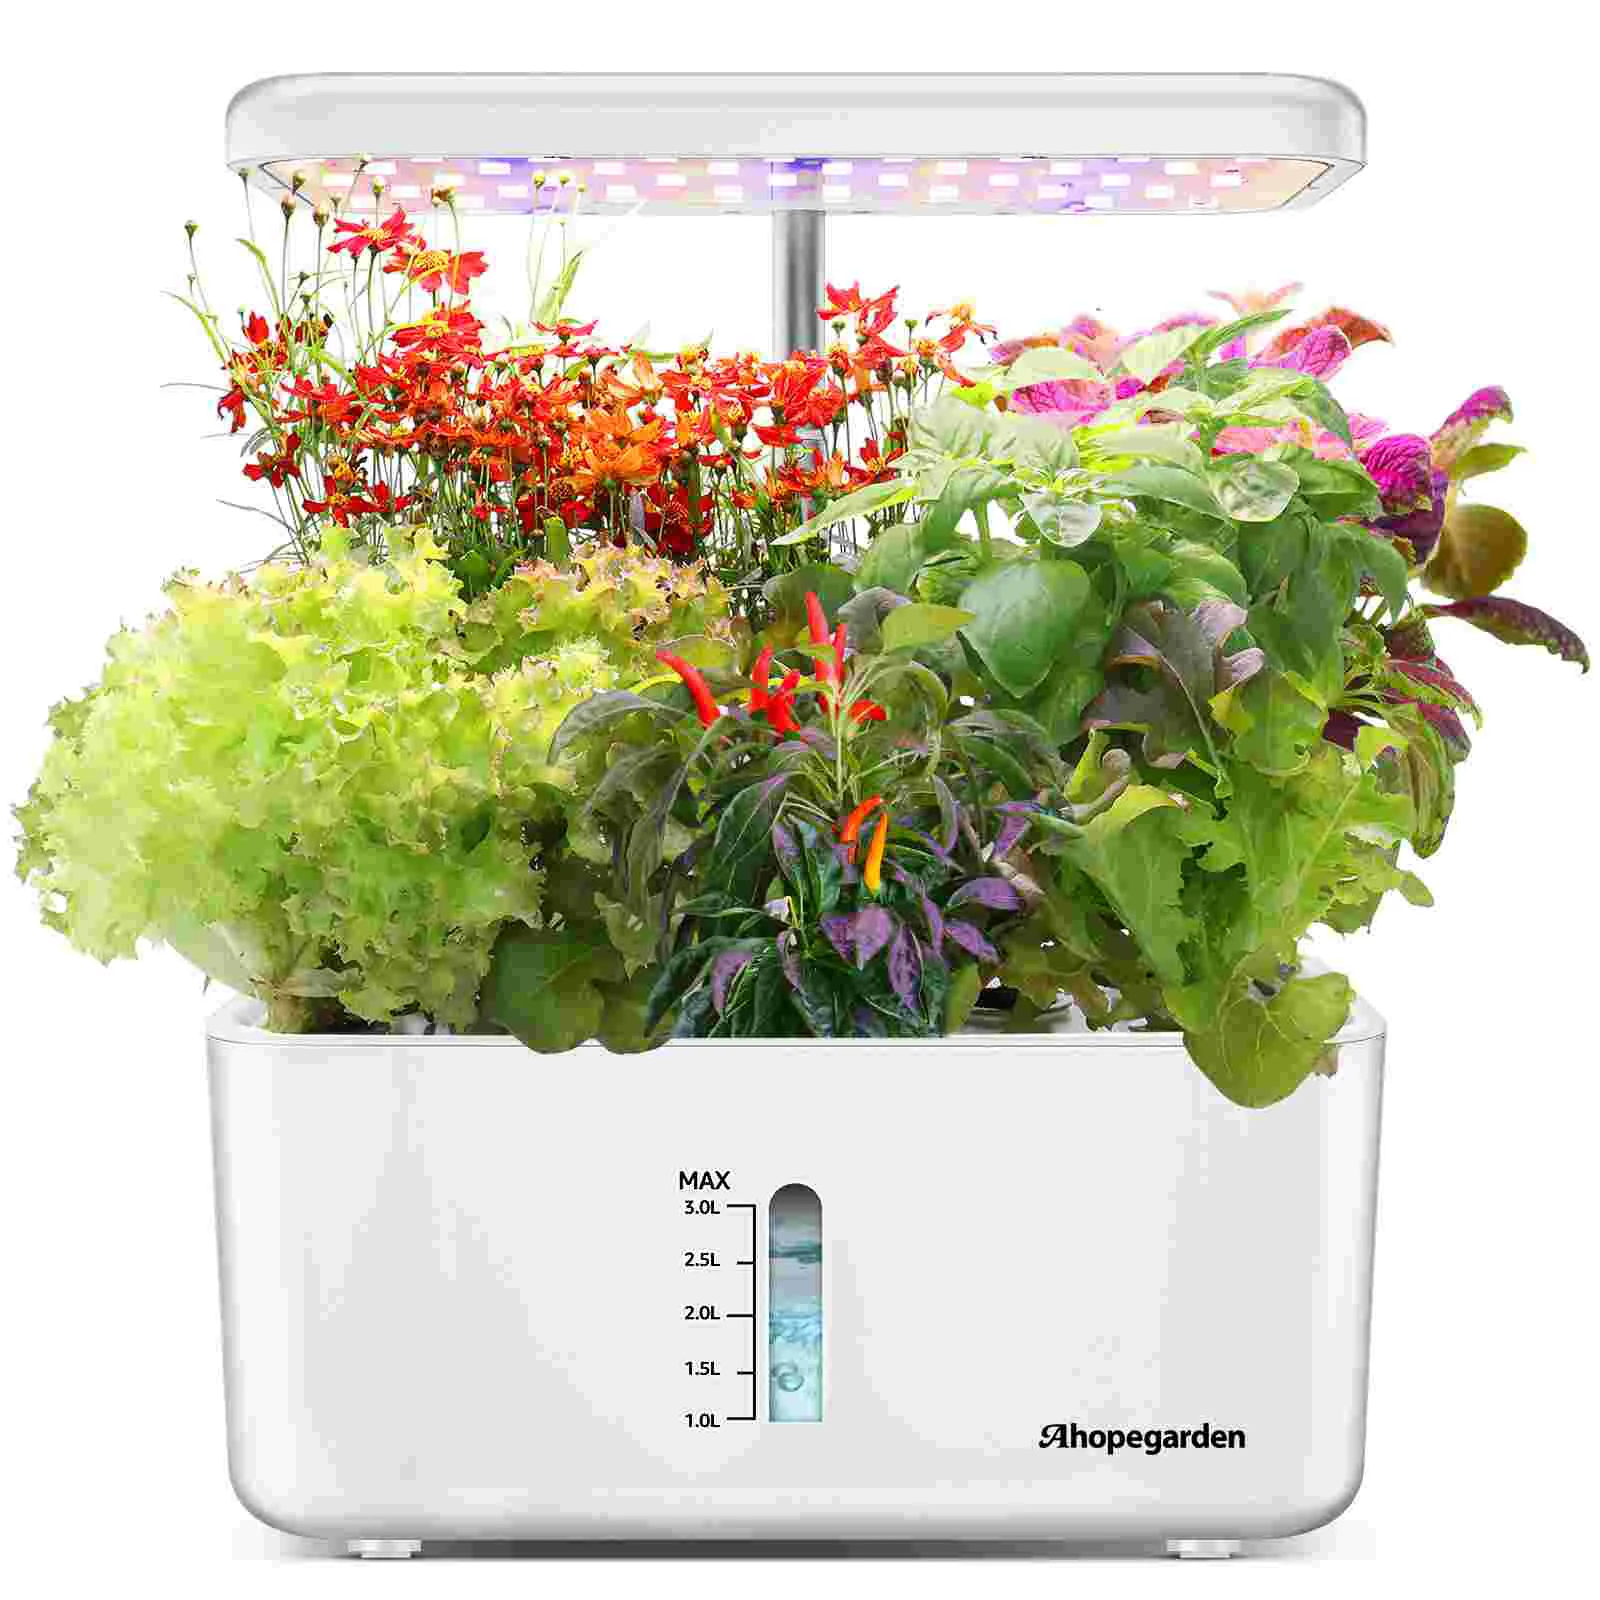 

Набор для сада в помещении, оборудование для гидропоники, умная гидропонная машина для выращивания растений